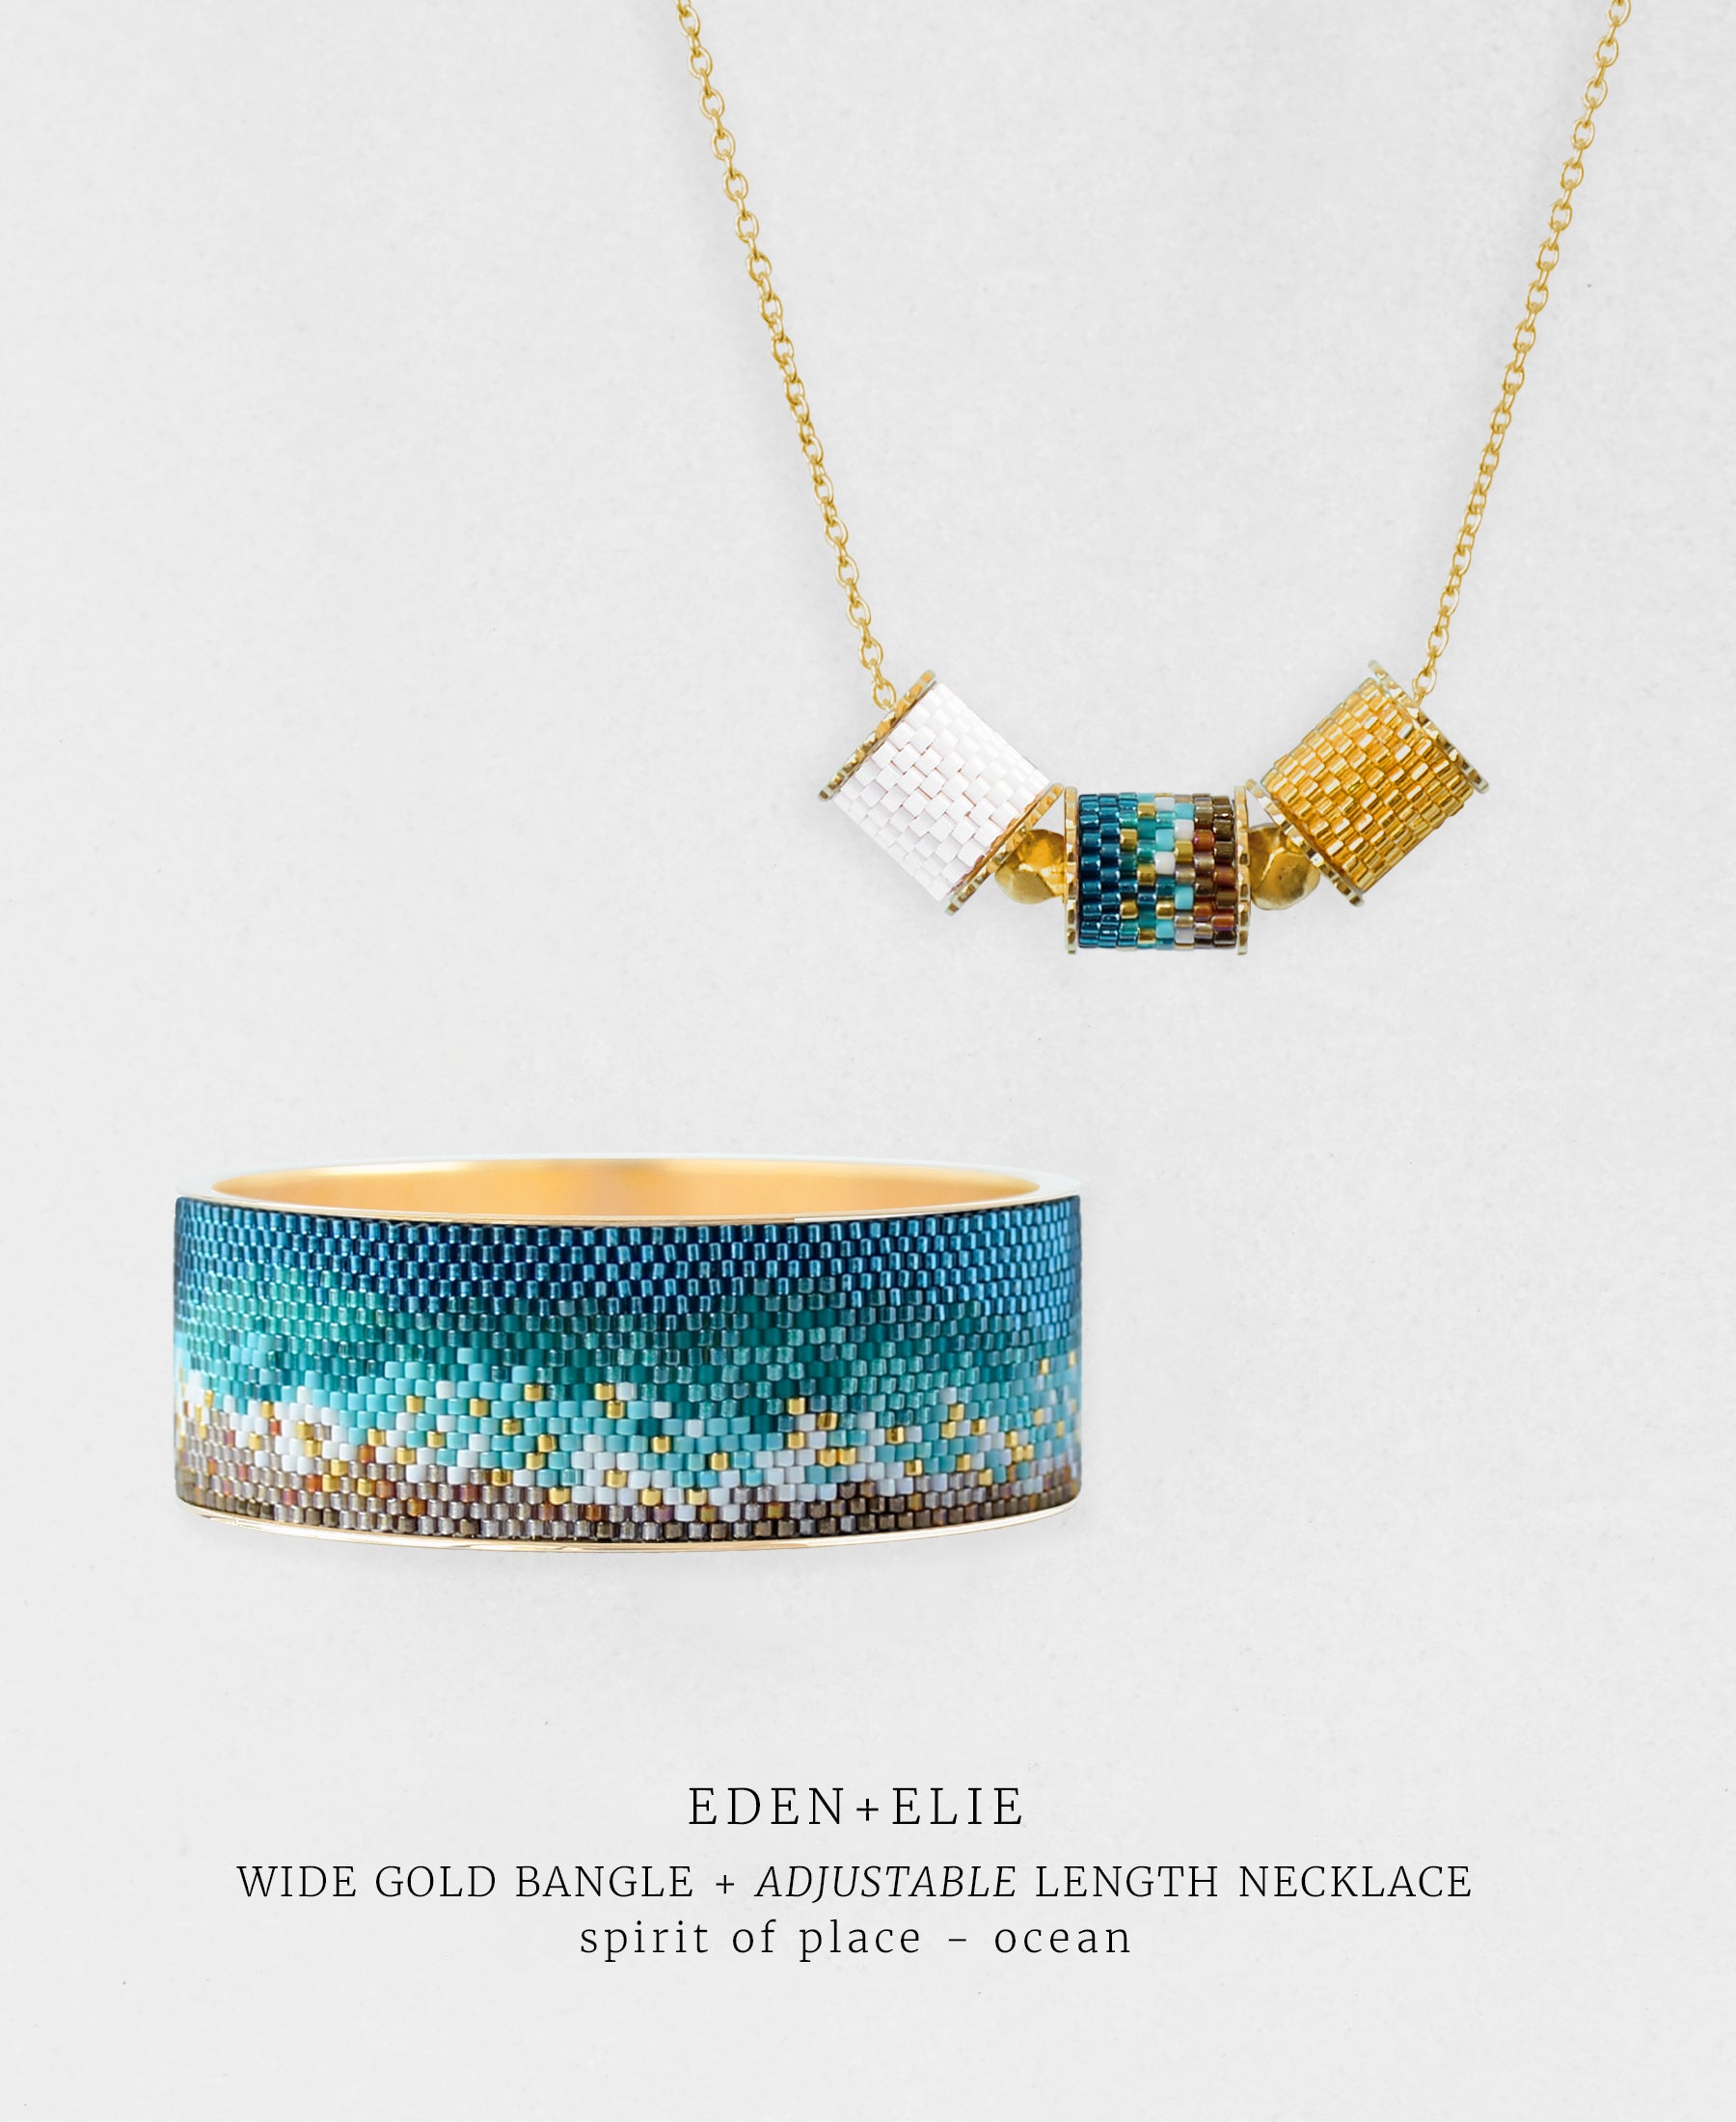 Wide Gold Bangle + Adjustable Length Necklace Set - Spirit of Place Ocean